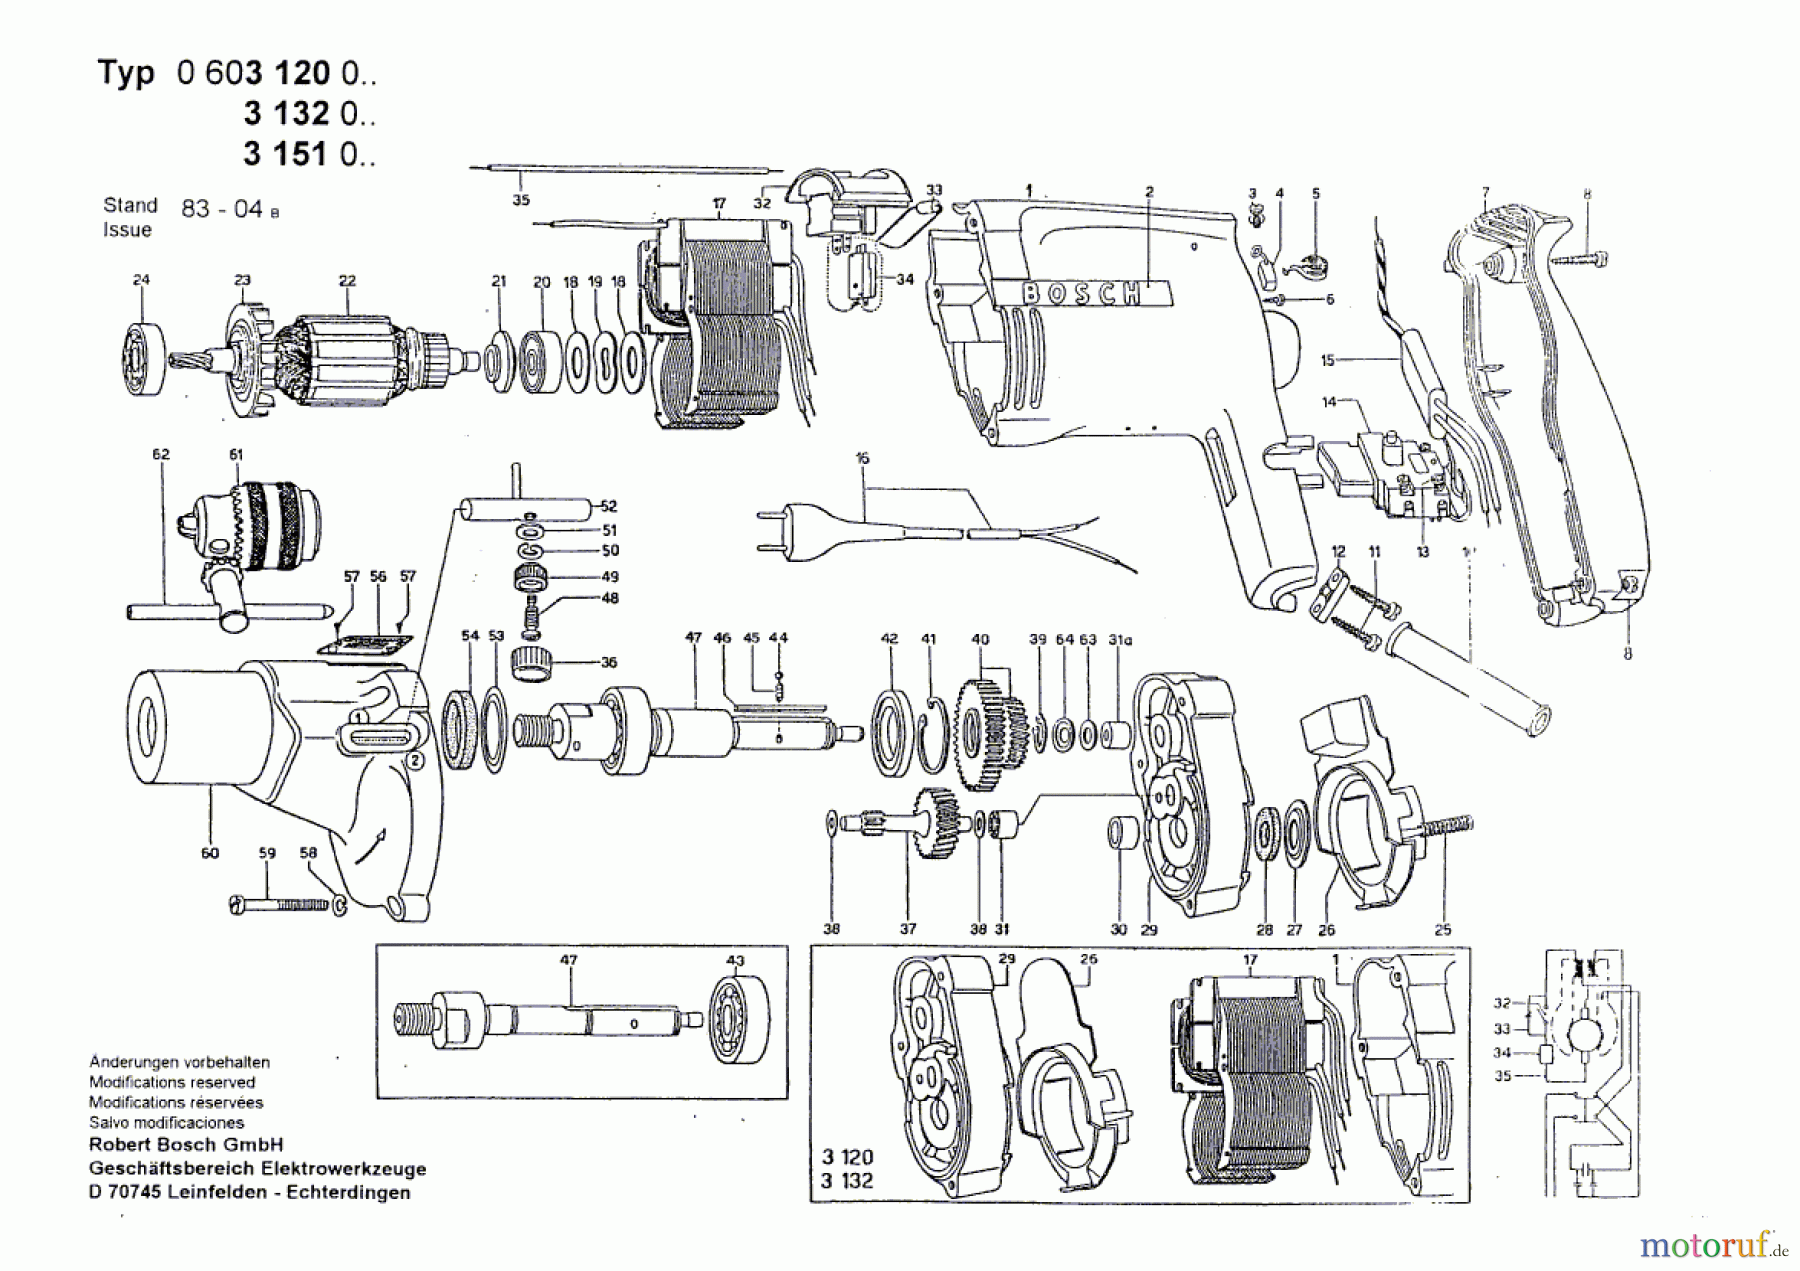  Bosch Werkzeug Bohrmaschine M 21 S Seite 1